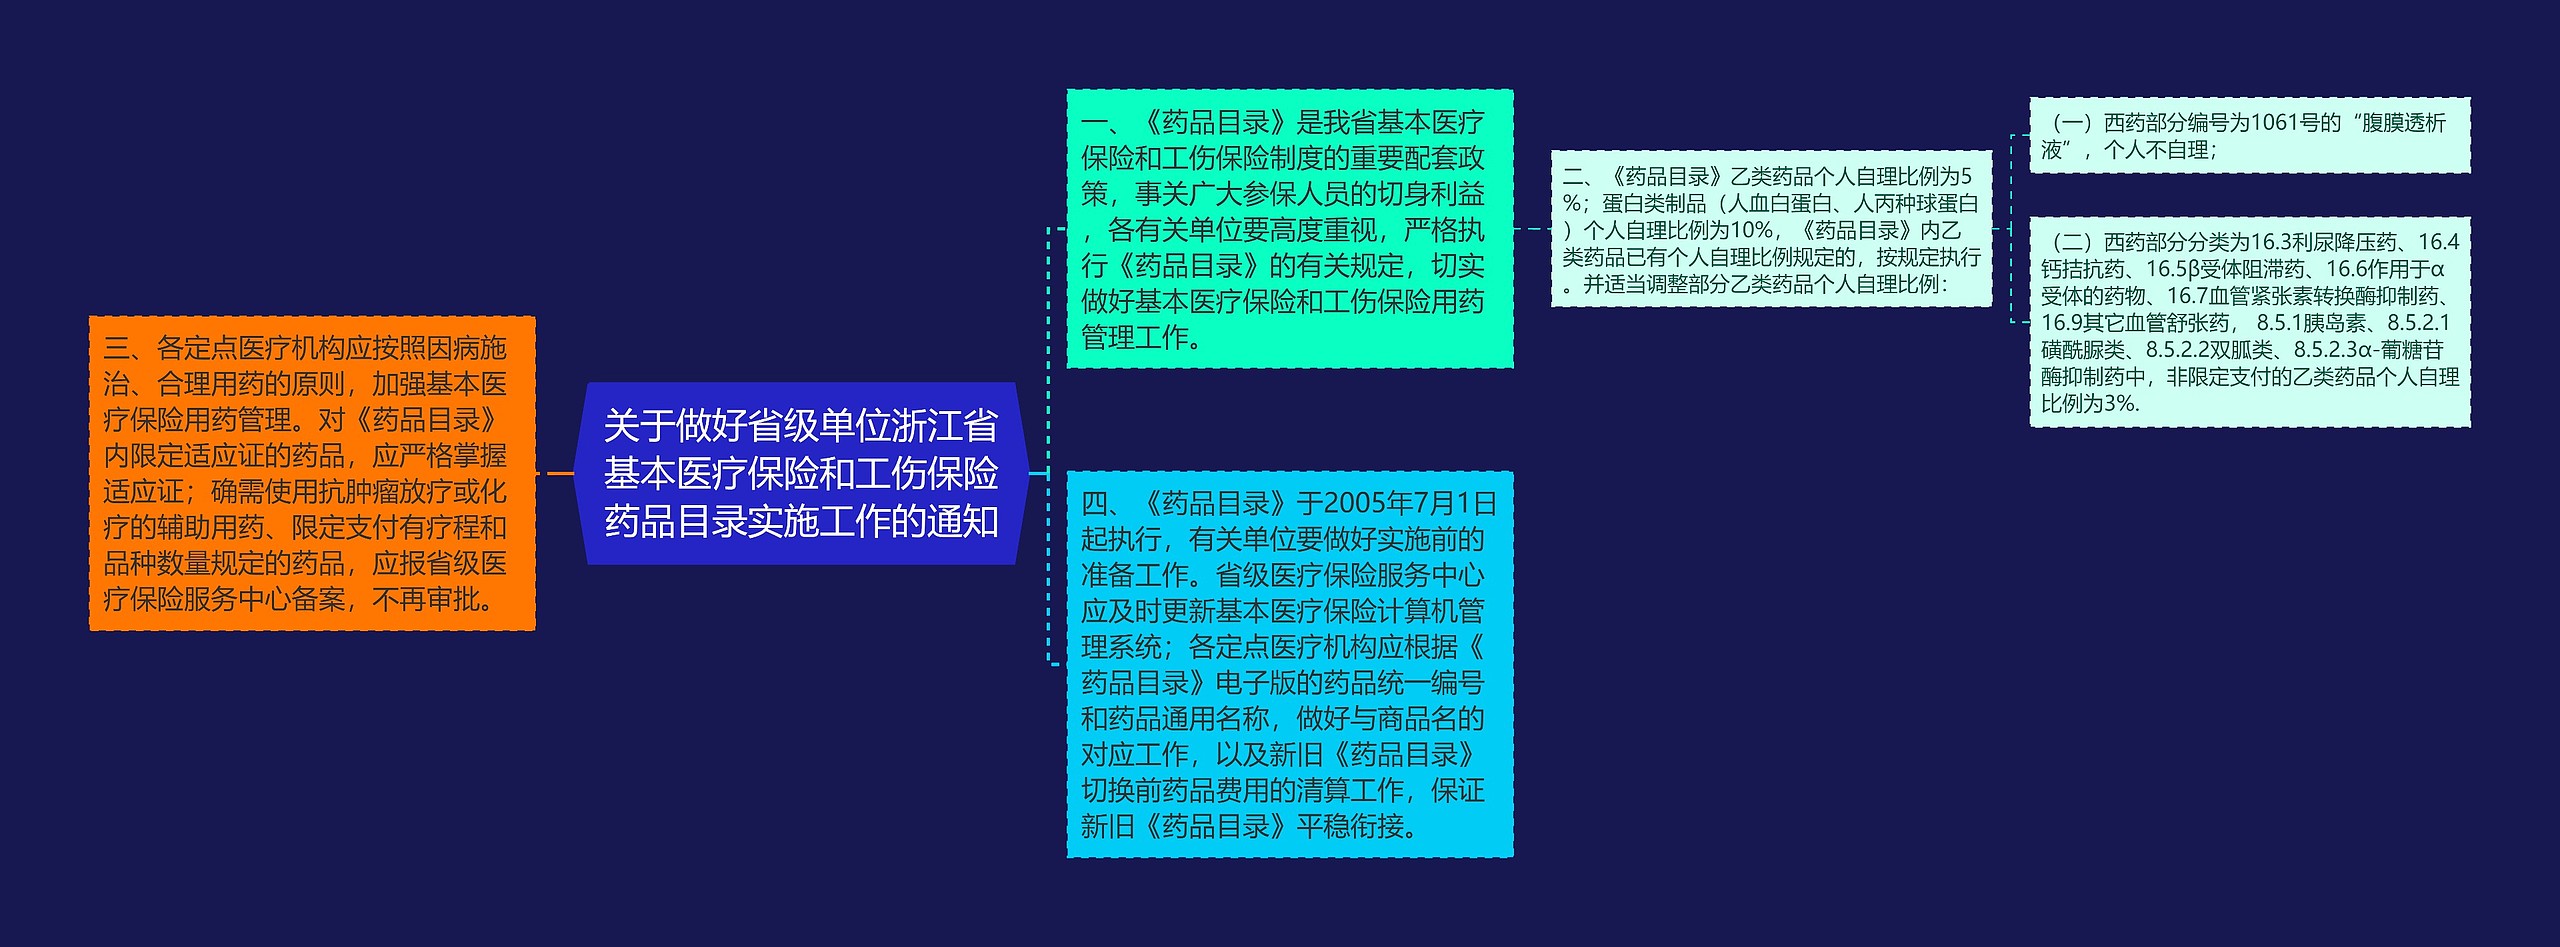 关于做好省级单位浙江省基本医疗保险和工伤保险药品目录实施工作的通知